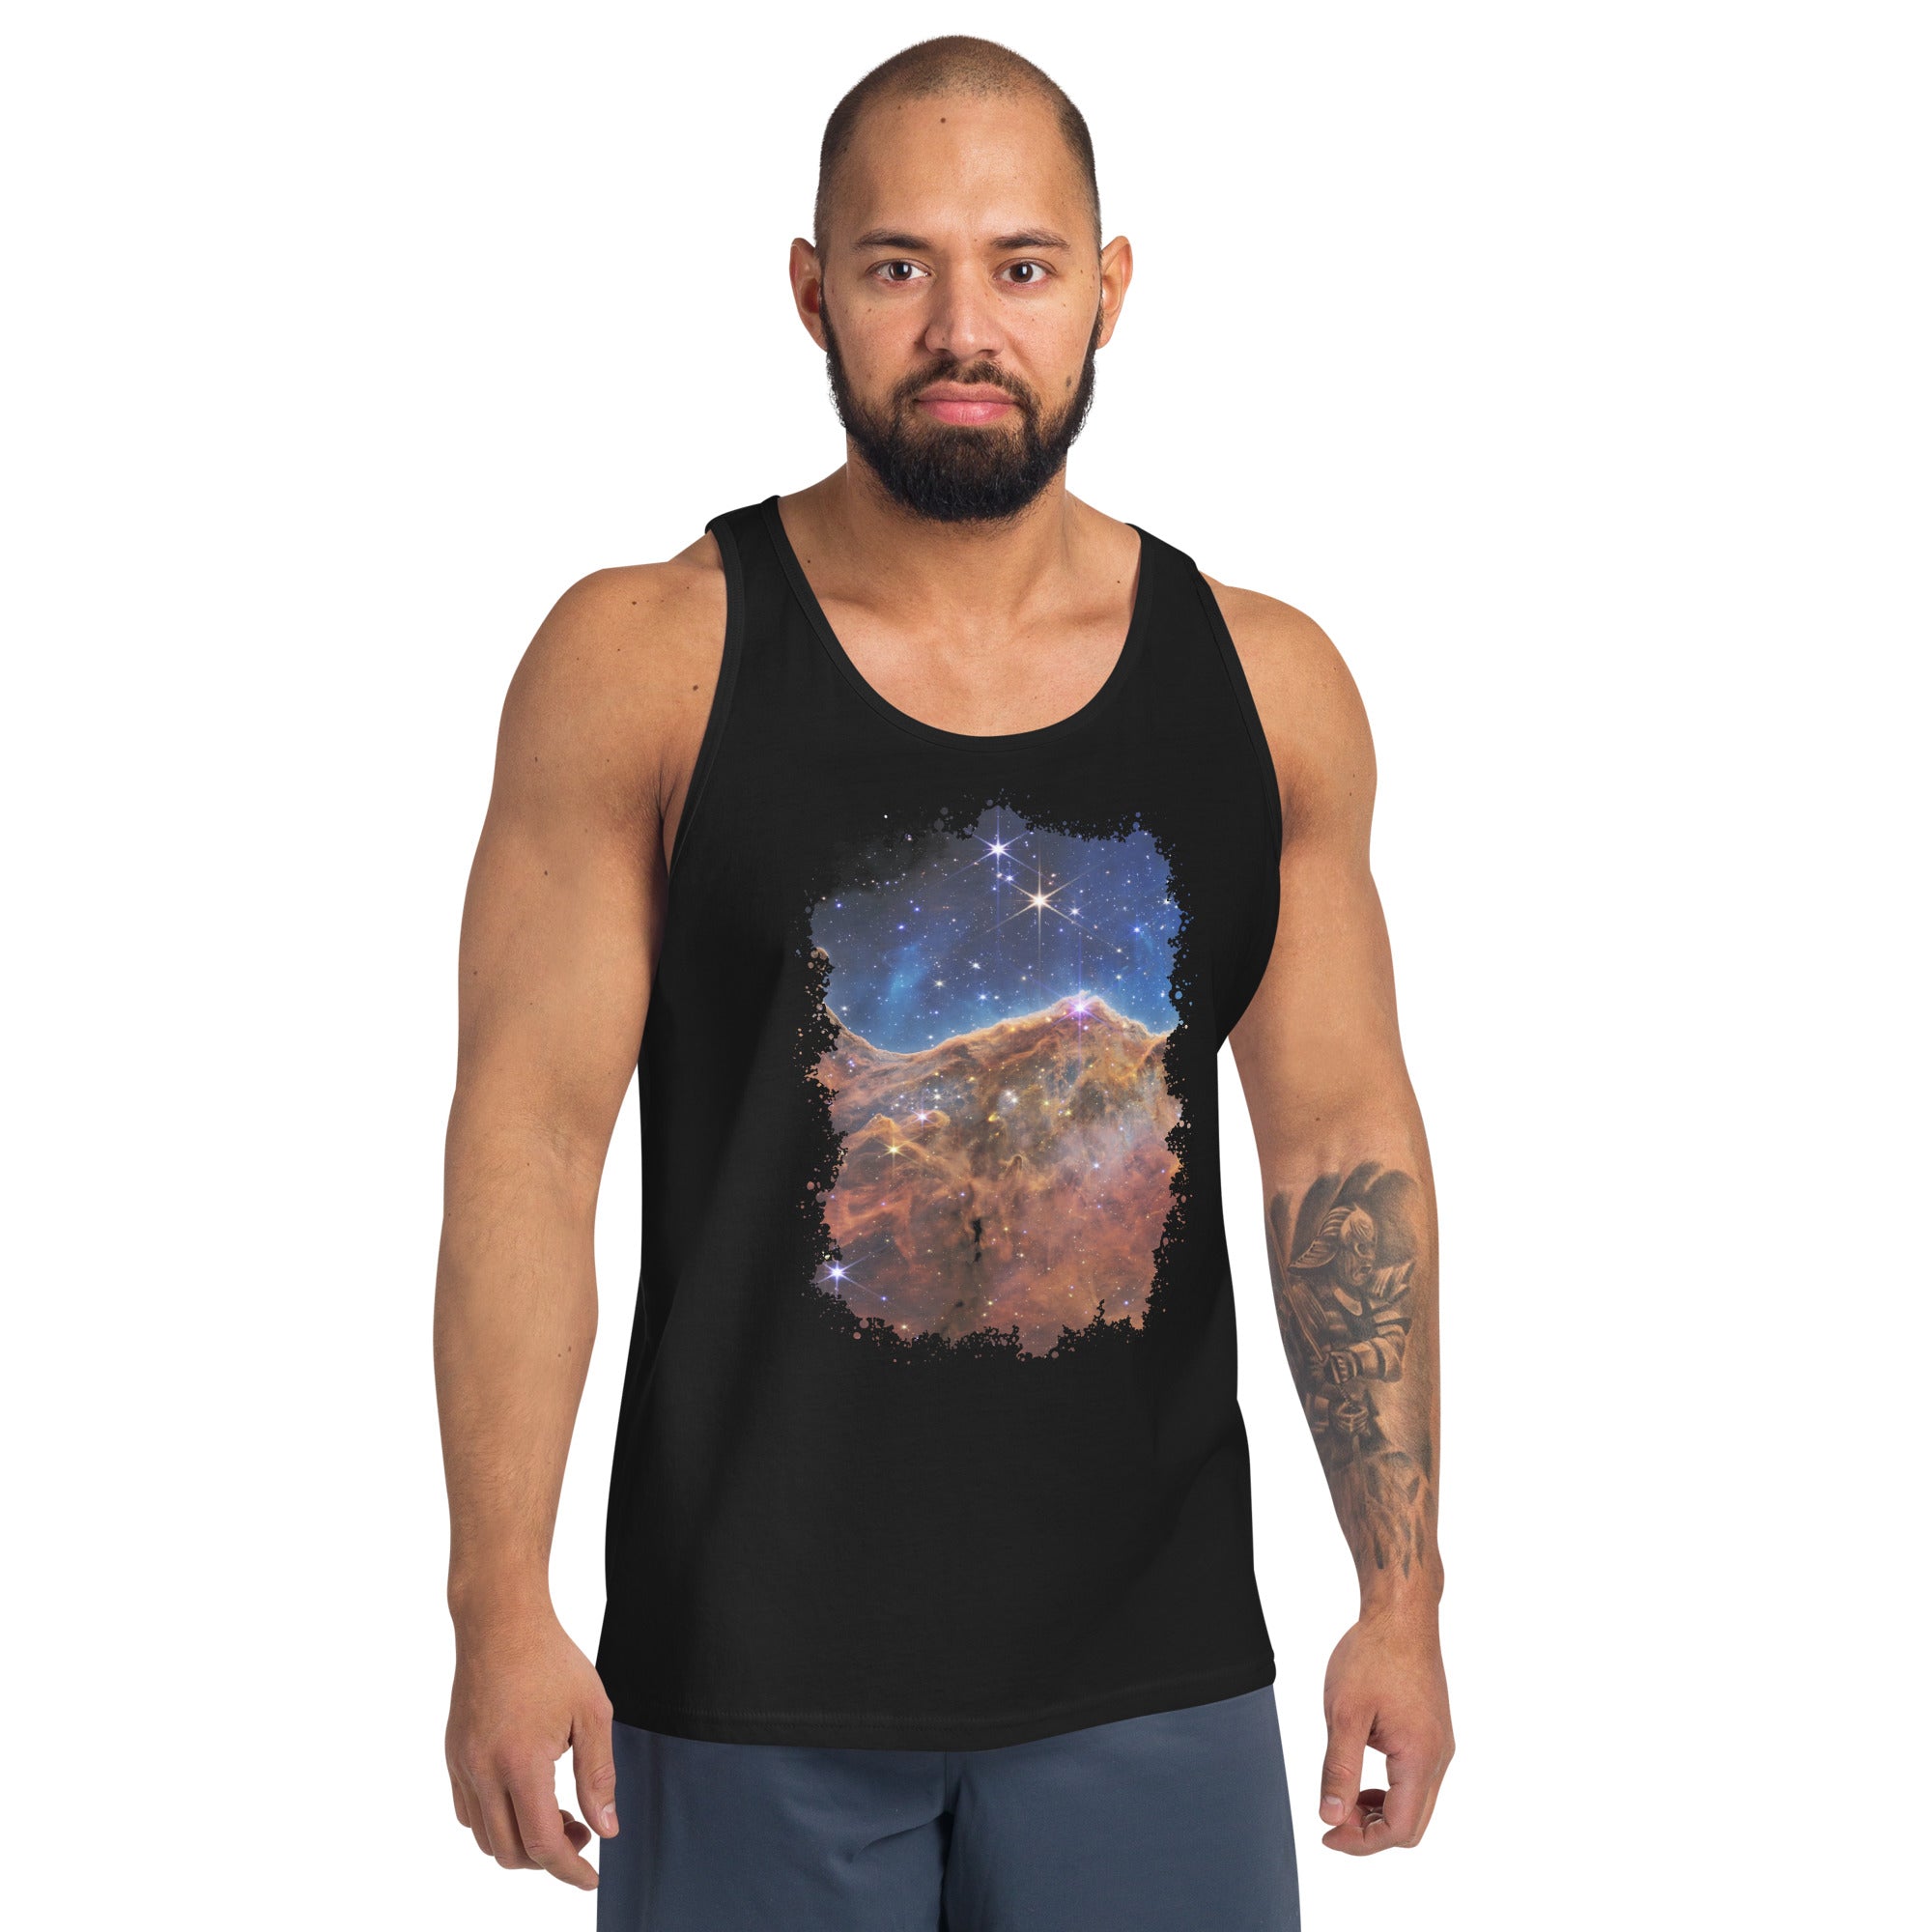 The Carina Nebula Space Graveyard JWST Men's Tank Top Shirt